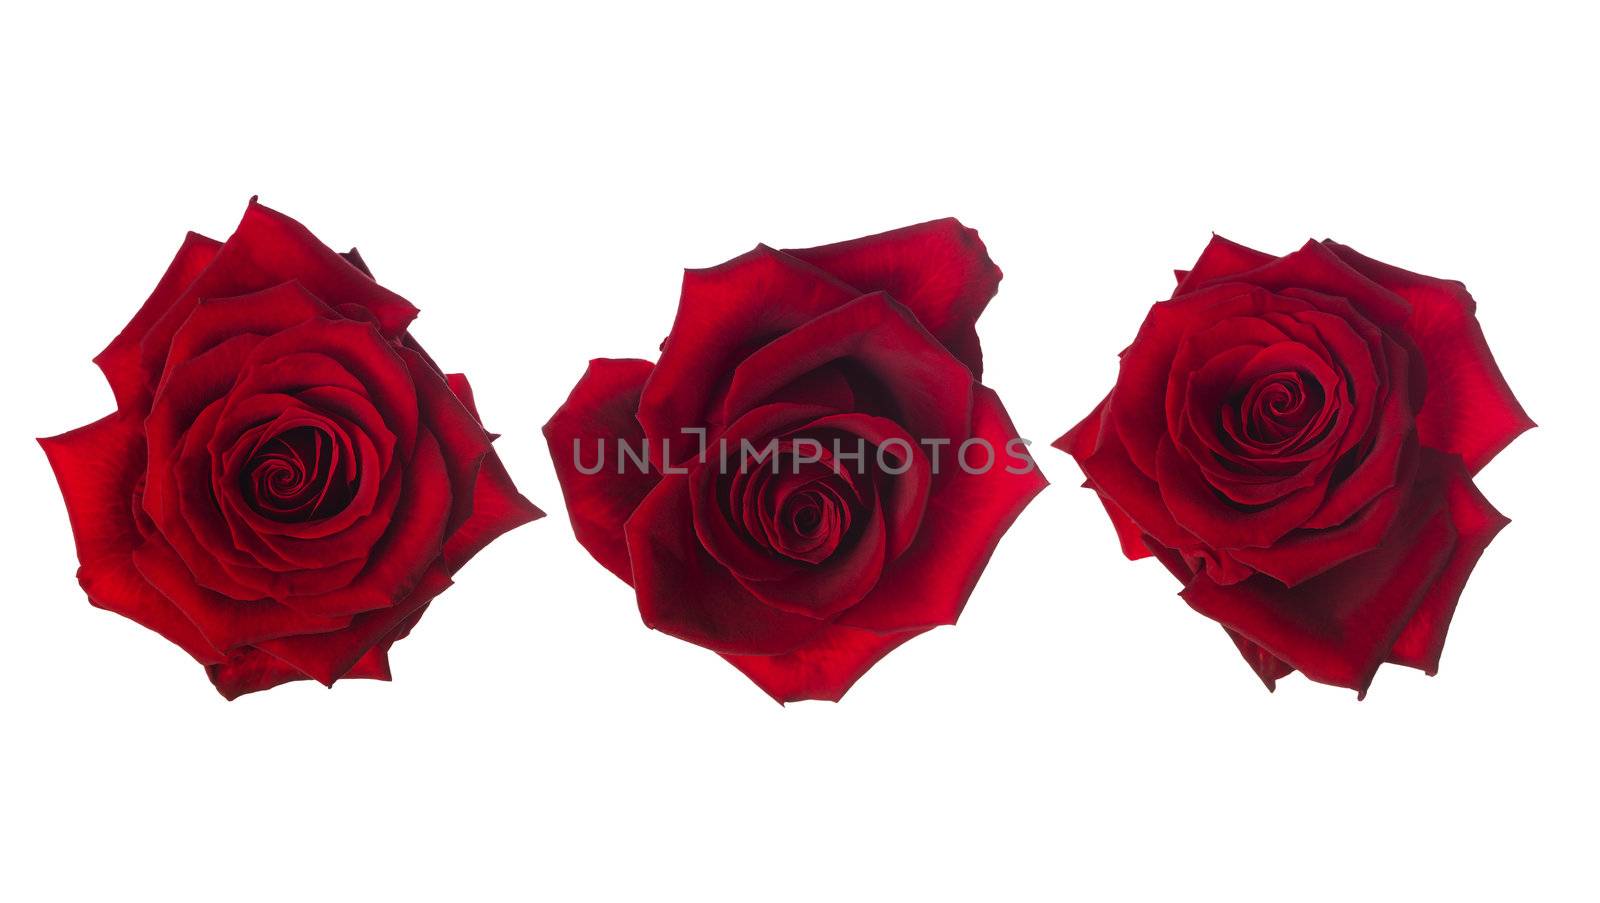 Red roses by gemenacom